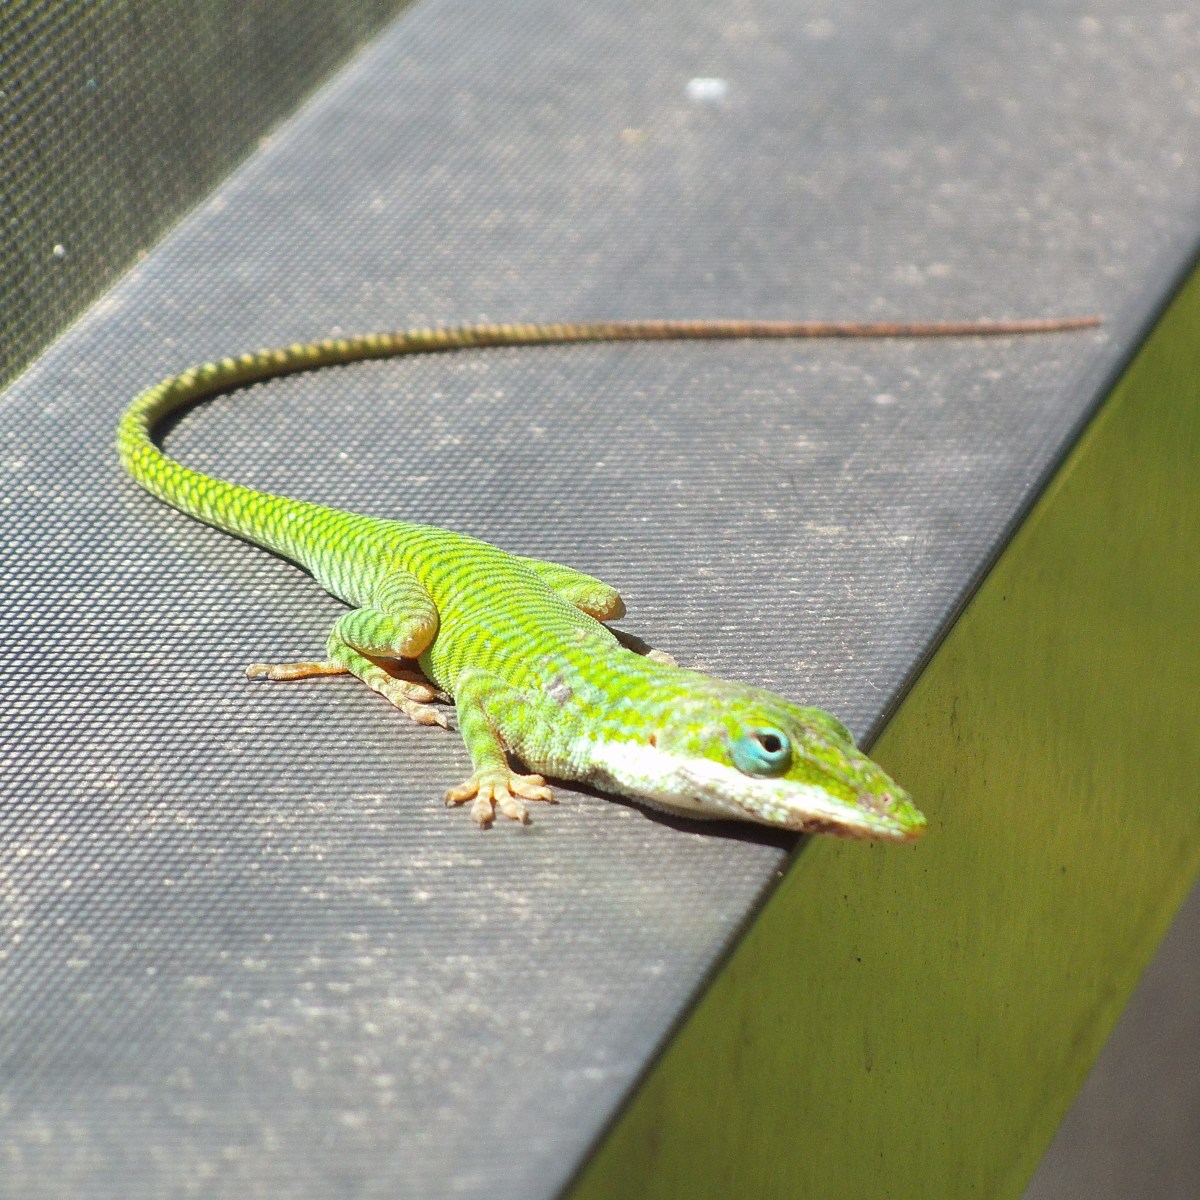 Observing Florida Lizards